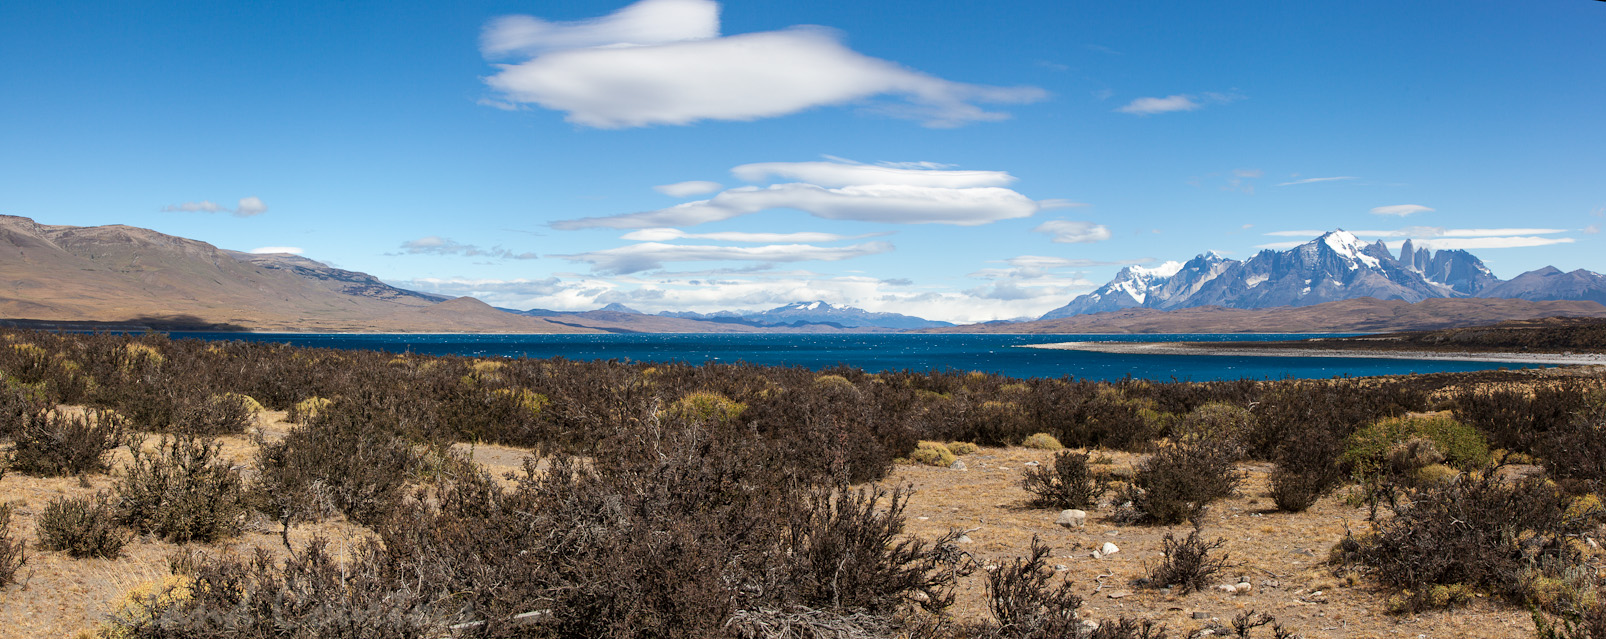 En s'éloignant du Torres del Paine, nous longeons le lac Sarmiento